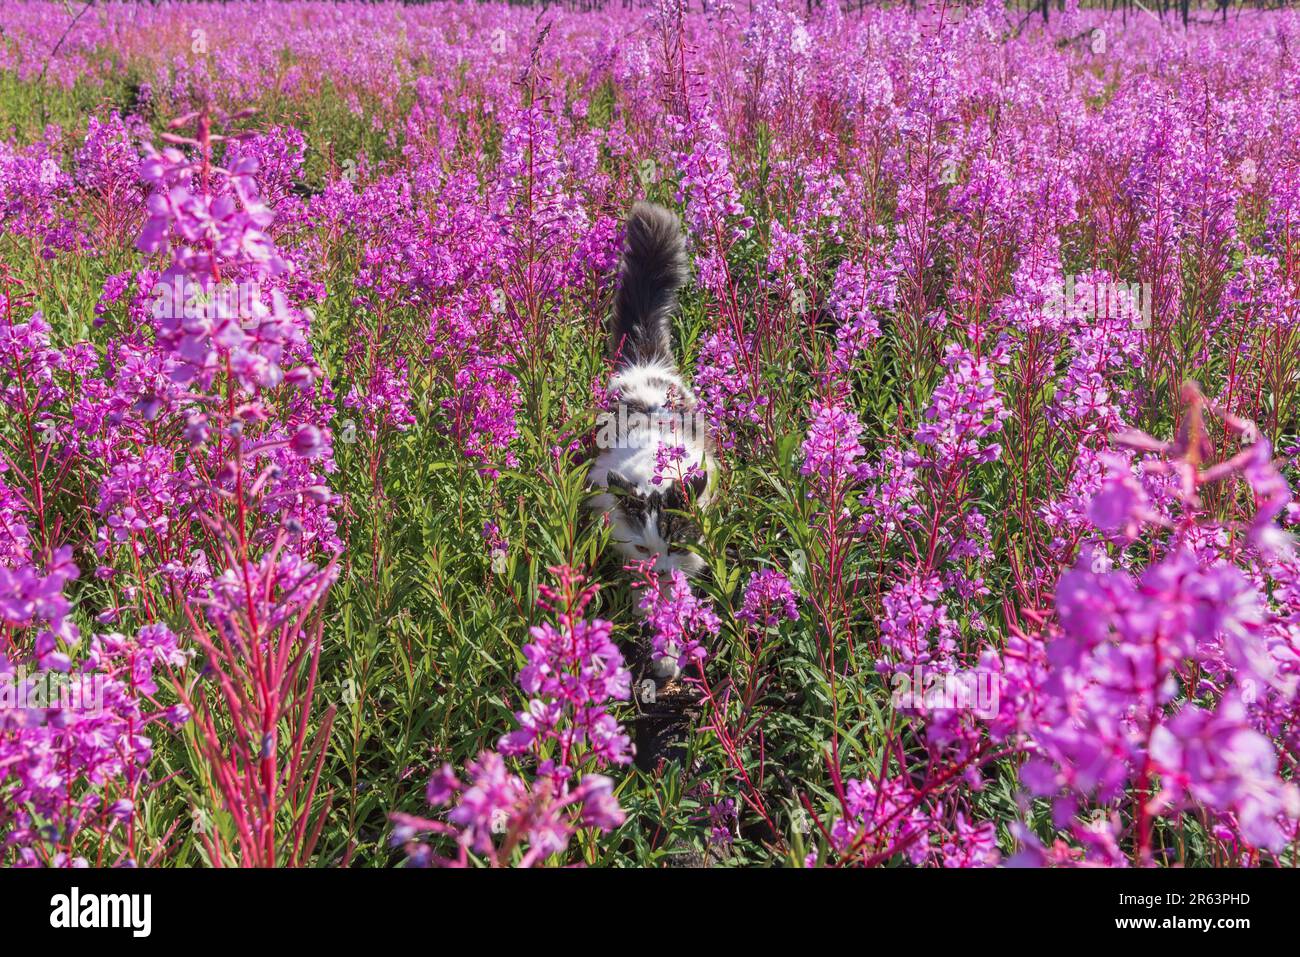 Im Sommer wandern Sie in Nordkanada auf einem Feld mit rosafarbenen Feuerweed-Blumen und genießen die wunderschöne pinkfarbene, lila Landschaft um die Katze Stockfoto